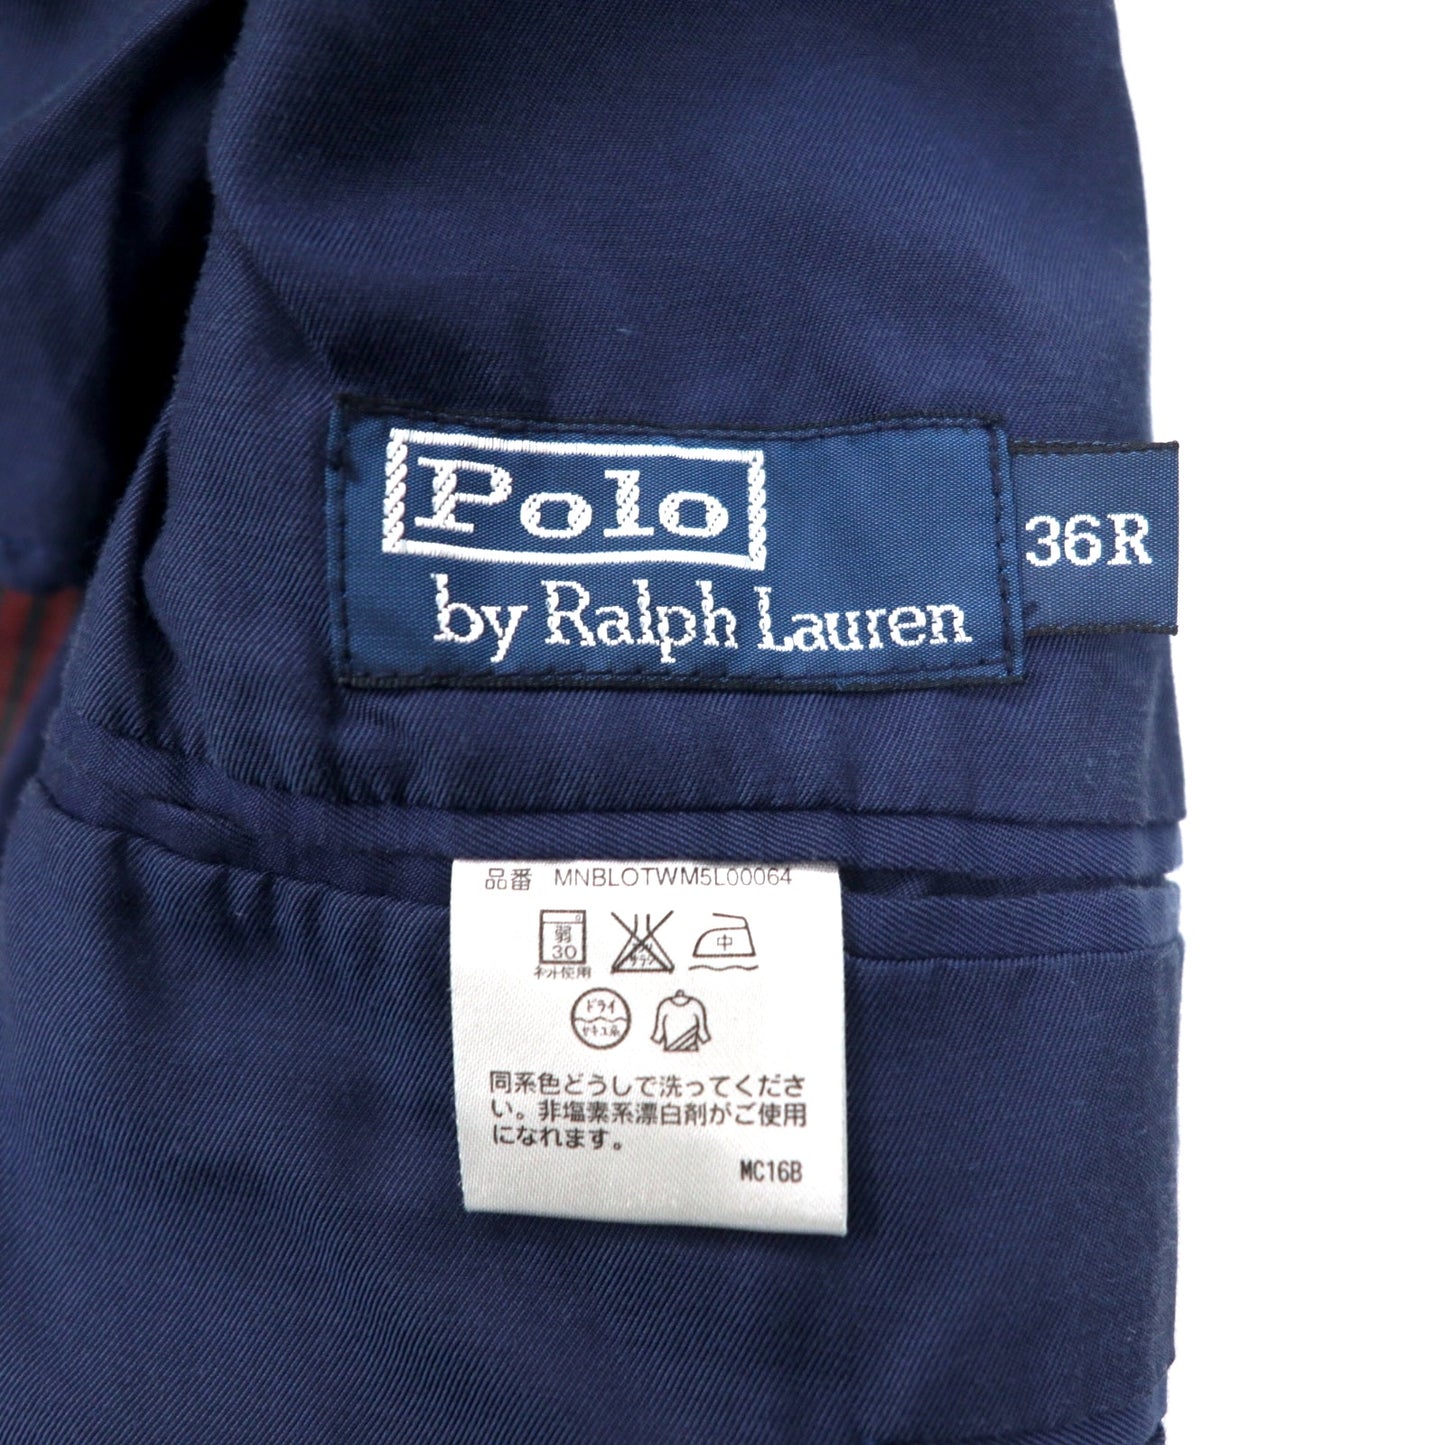 Polo by Ralph Lauren 3B テーラードジャケット 36-R マルチカラー チェック Indian Madras コットン BOHEMIAN SUMMER 未使用品